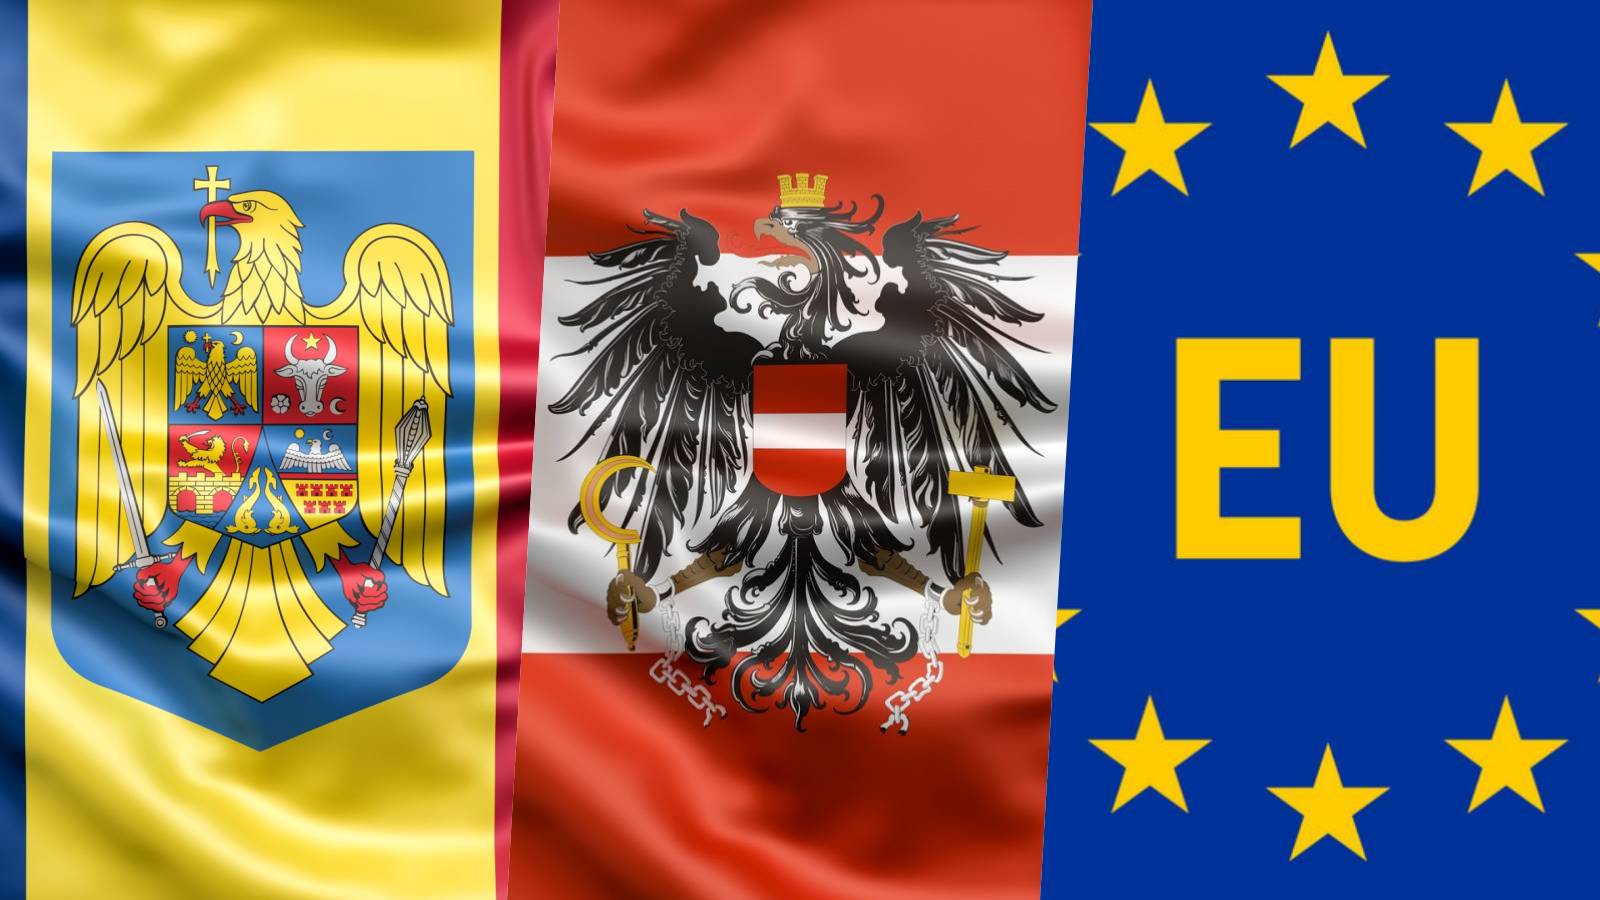 Autriche Karl Nehammer De nouvelles mesures de l'UE décidées LORSQUE la Roumanie adhère à Schengen